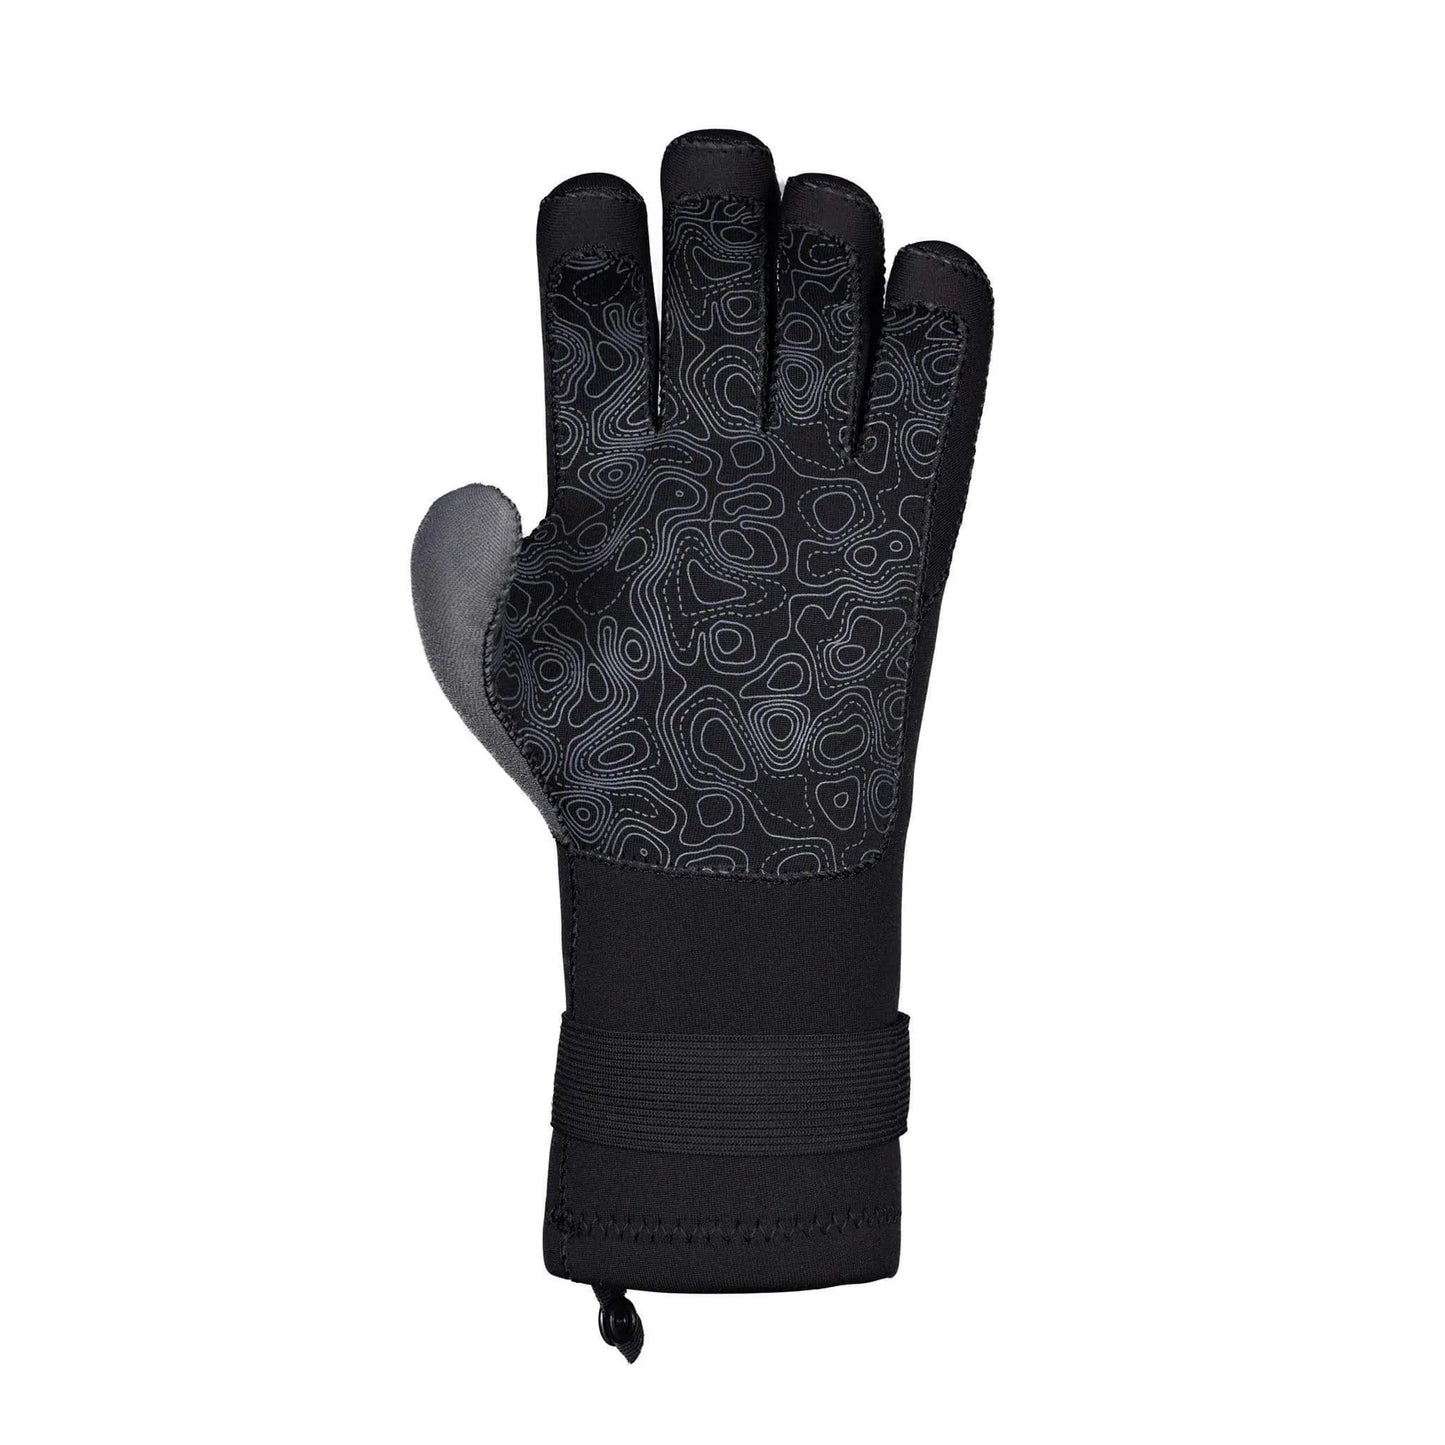 Electron Glove